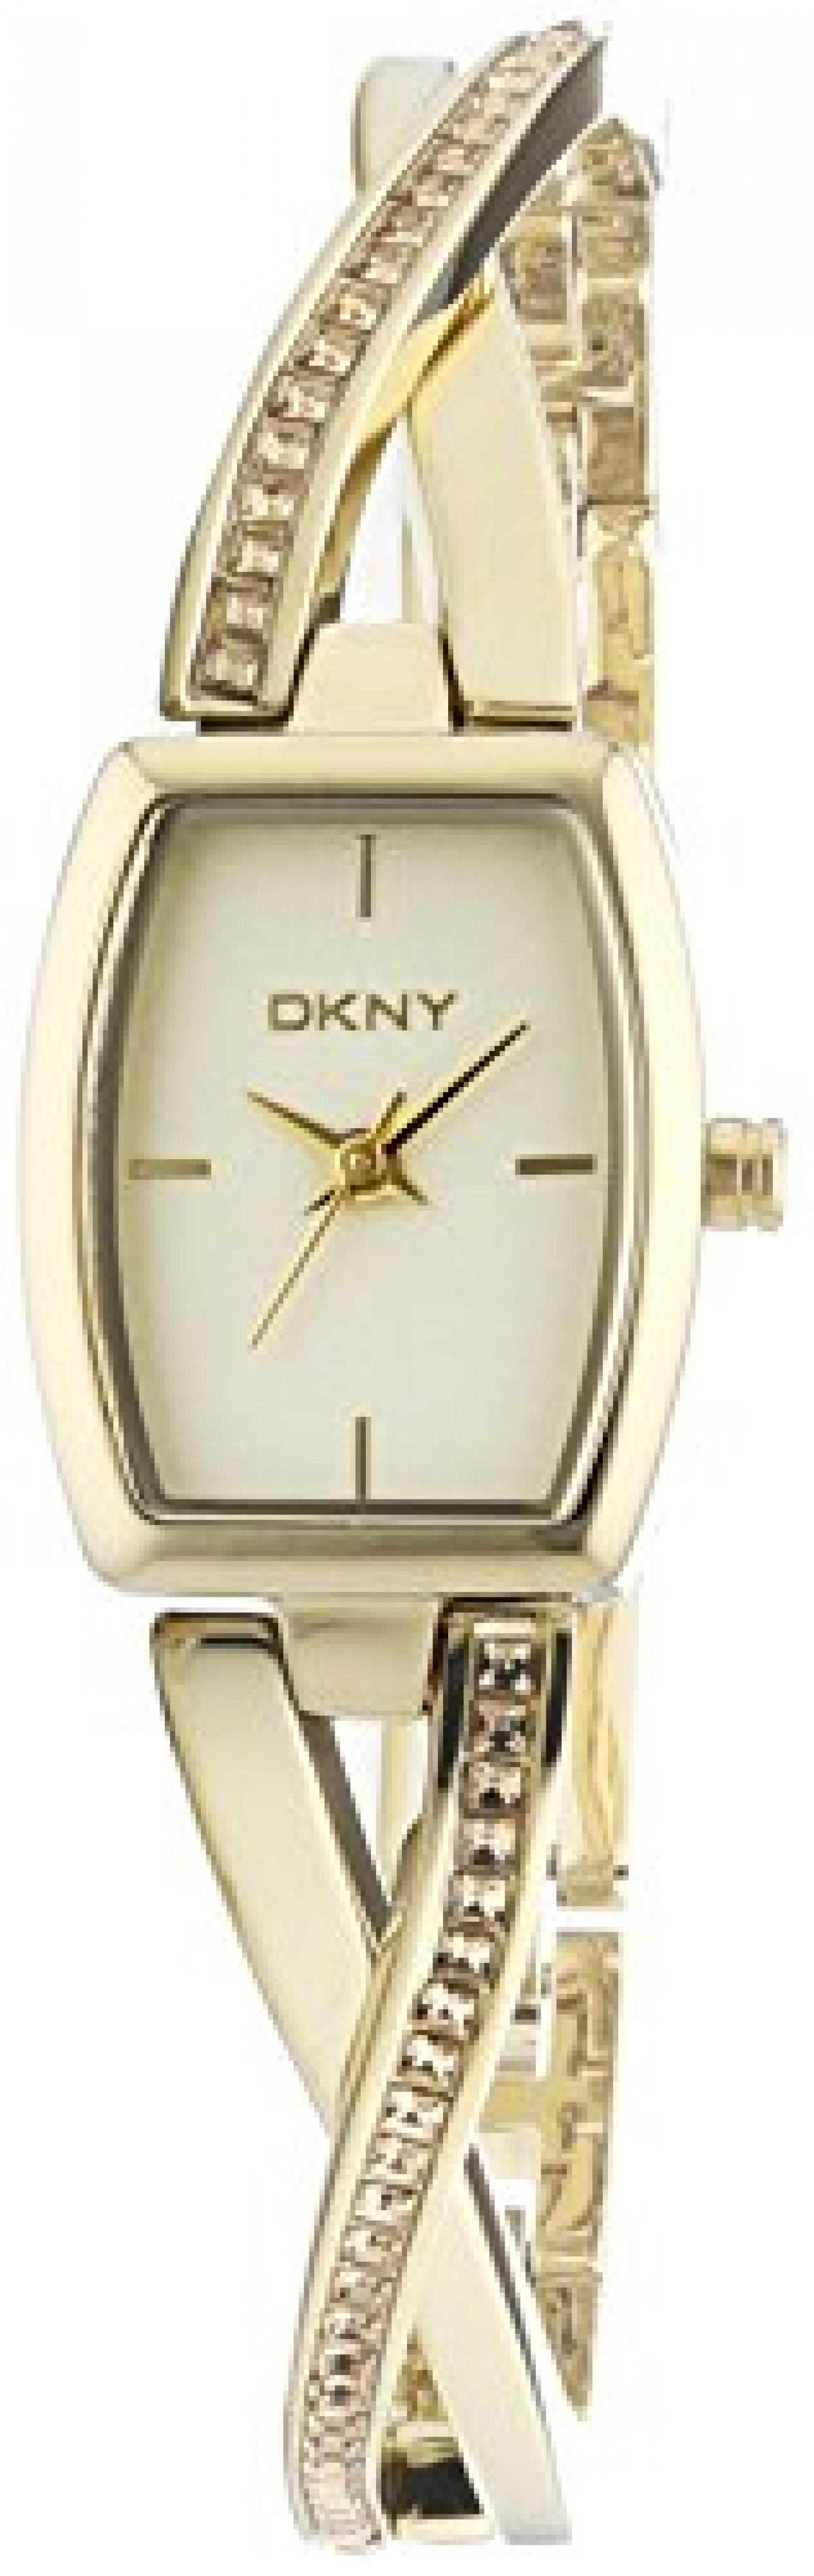 DKNY Damen-Armbanduhr XS Analog Quarz Edelstahl beschichtet NY2237 